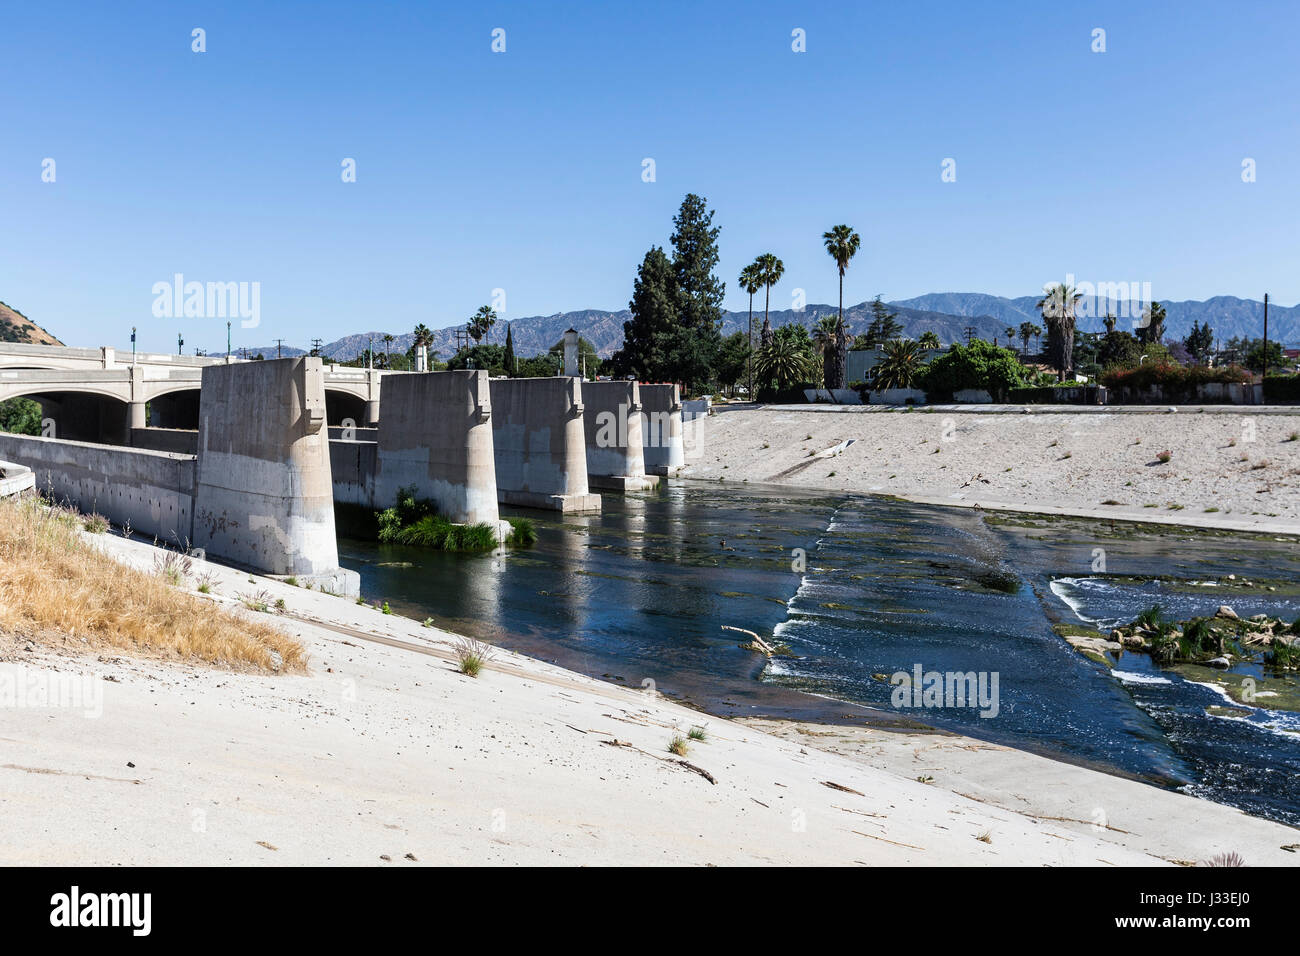 Los Angeles-Fluss an der Brücke von Glendale Blvd in Südkalifornien. Stockfoto